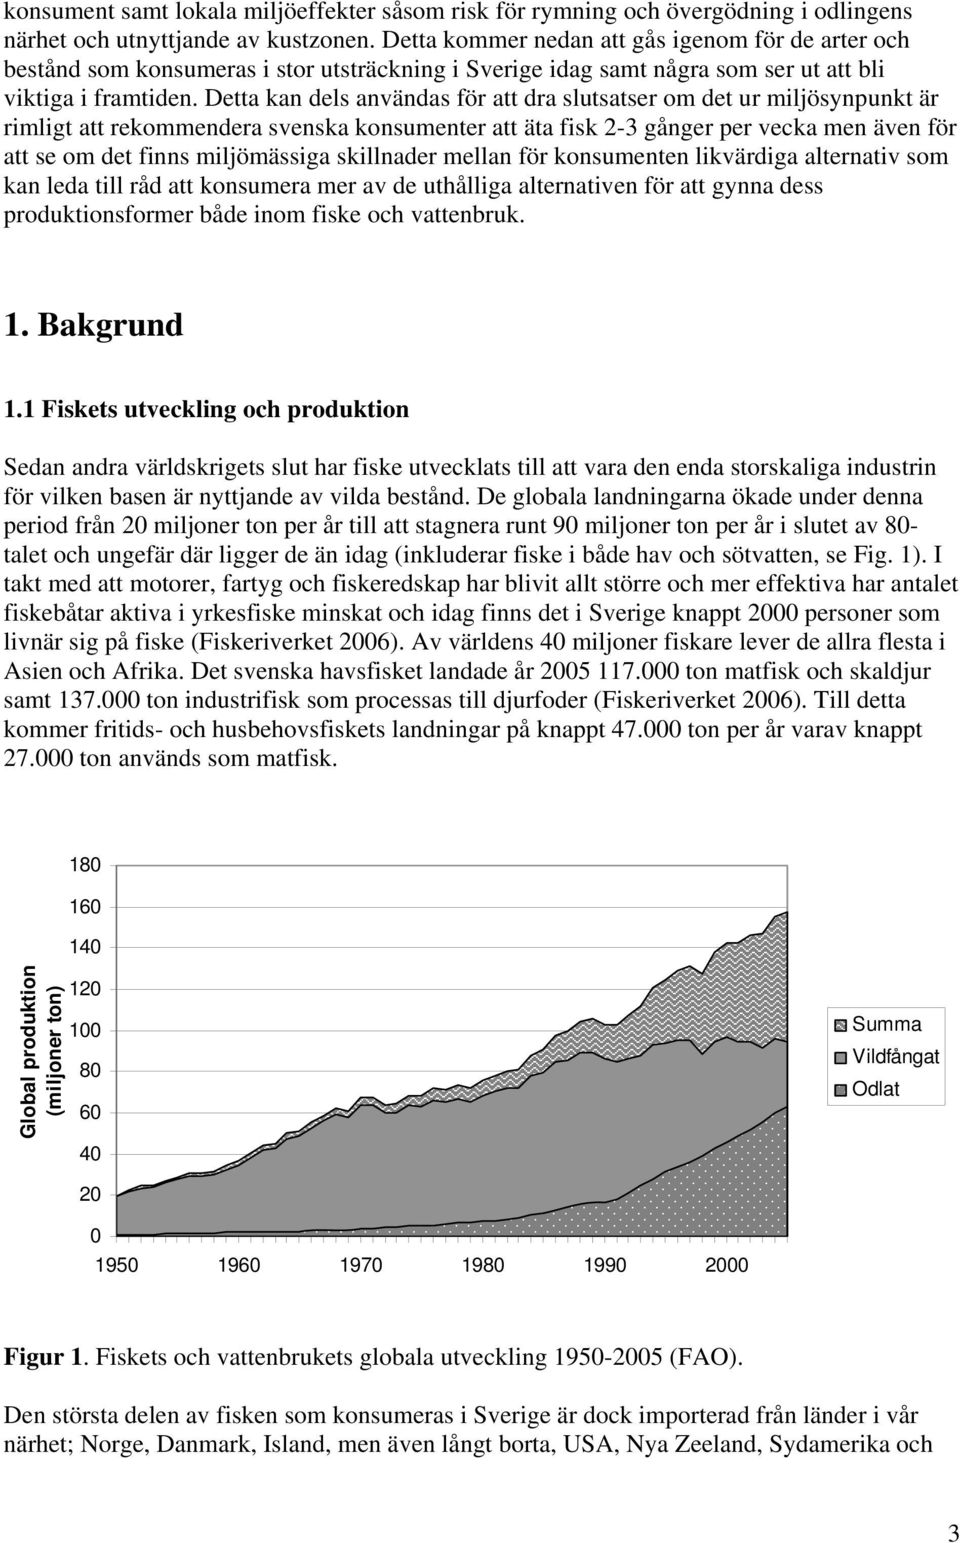 Detta kan dels användas för att dra slutsatser om det ur miljösynpunkt är rimligt att rekommendera svenska konsumenter att äta fisk 2-3 gånger per vecka men även för att se om det finns miljömässiga